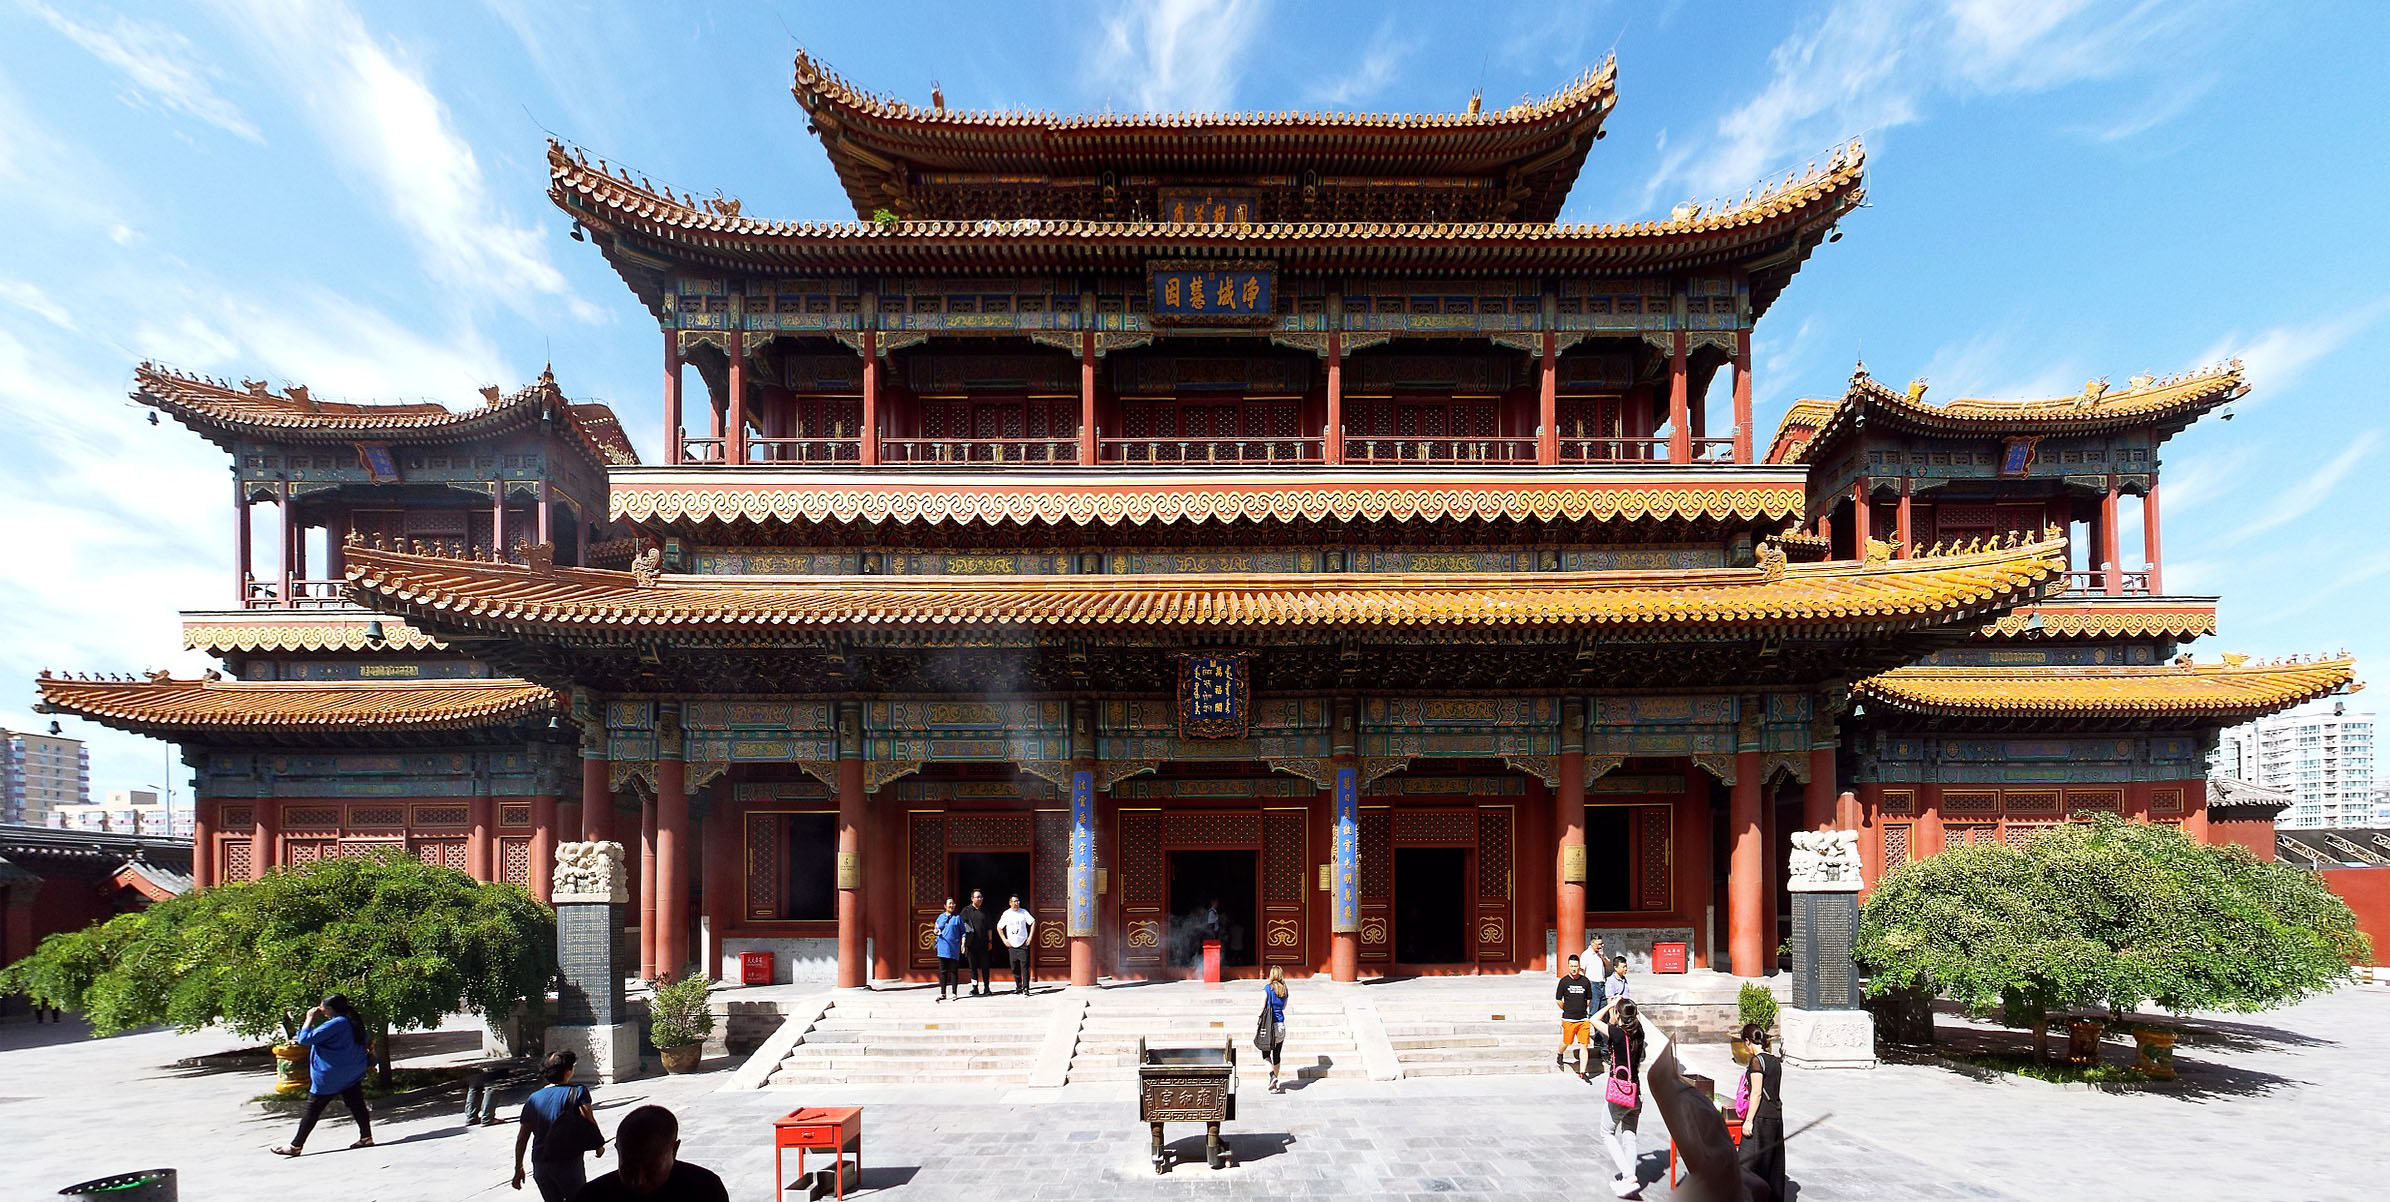 วัดแห่งแดนมังกร วัดลามะ Yonghe Lama Temple Location Dongcheng, China